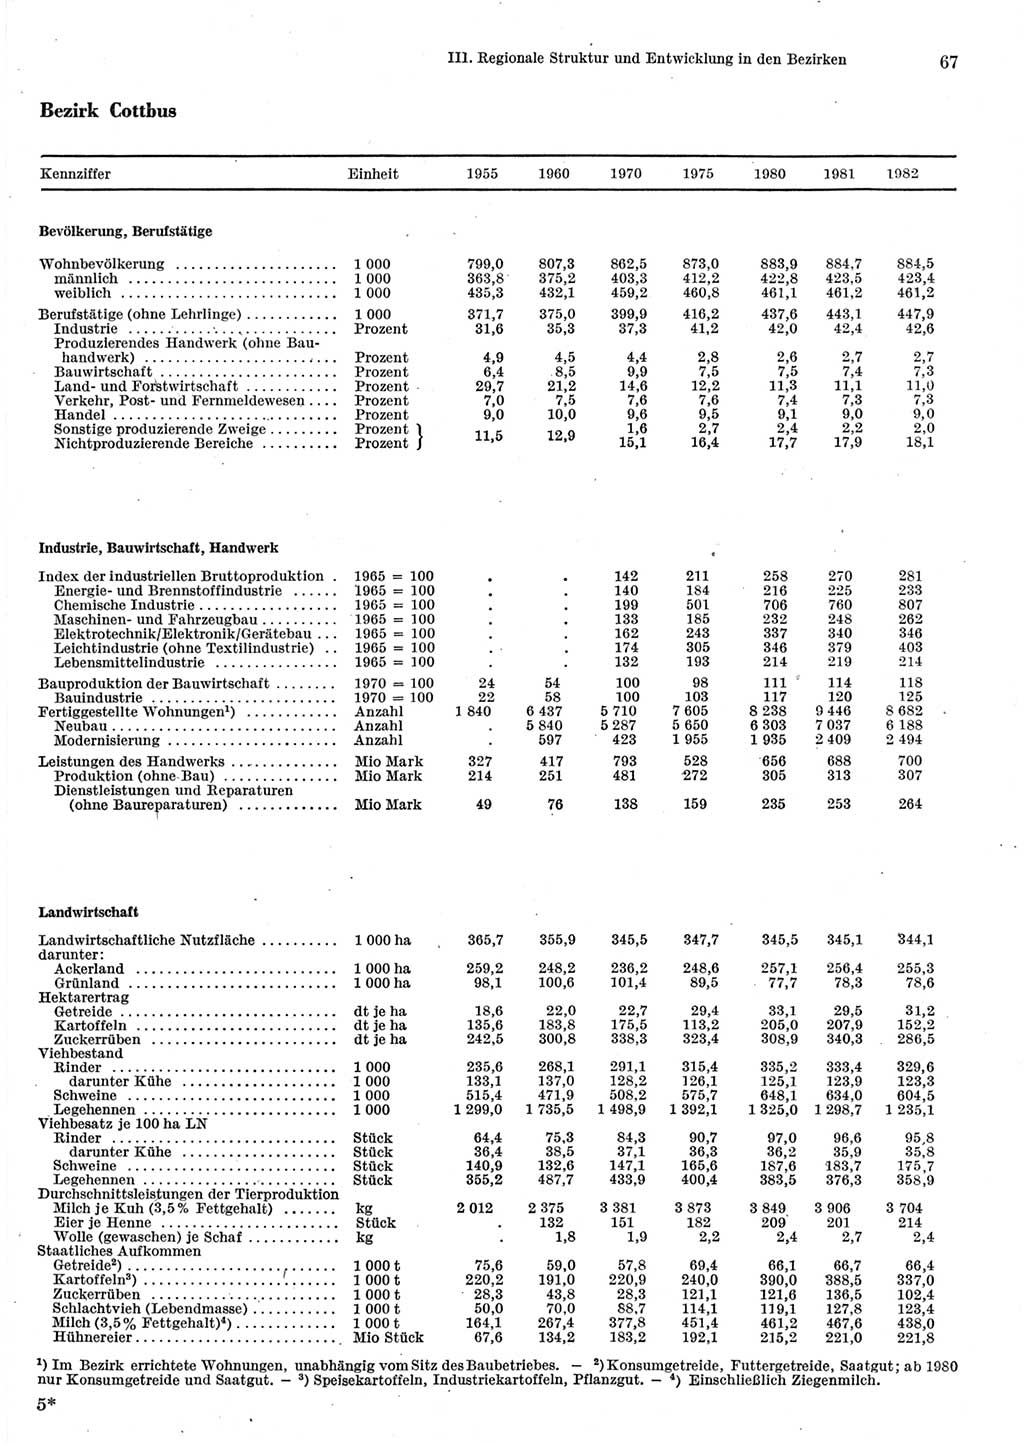 Statistisches Jahrbuch der Deutschen Demokratischen Republik (DDR) 1983, Seite 67 (Stat. Jb. DDR 1983, S. 67)